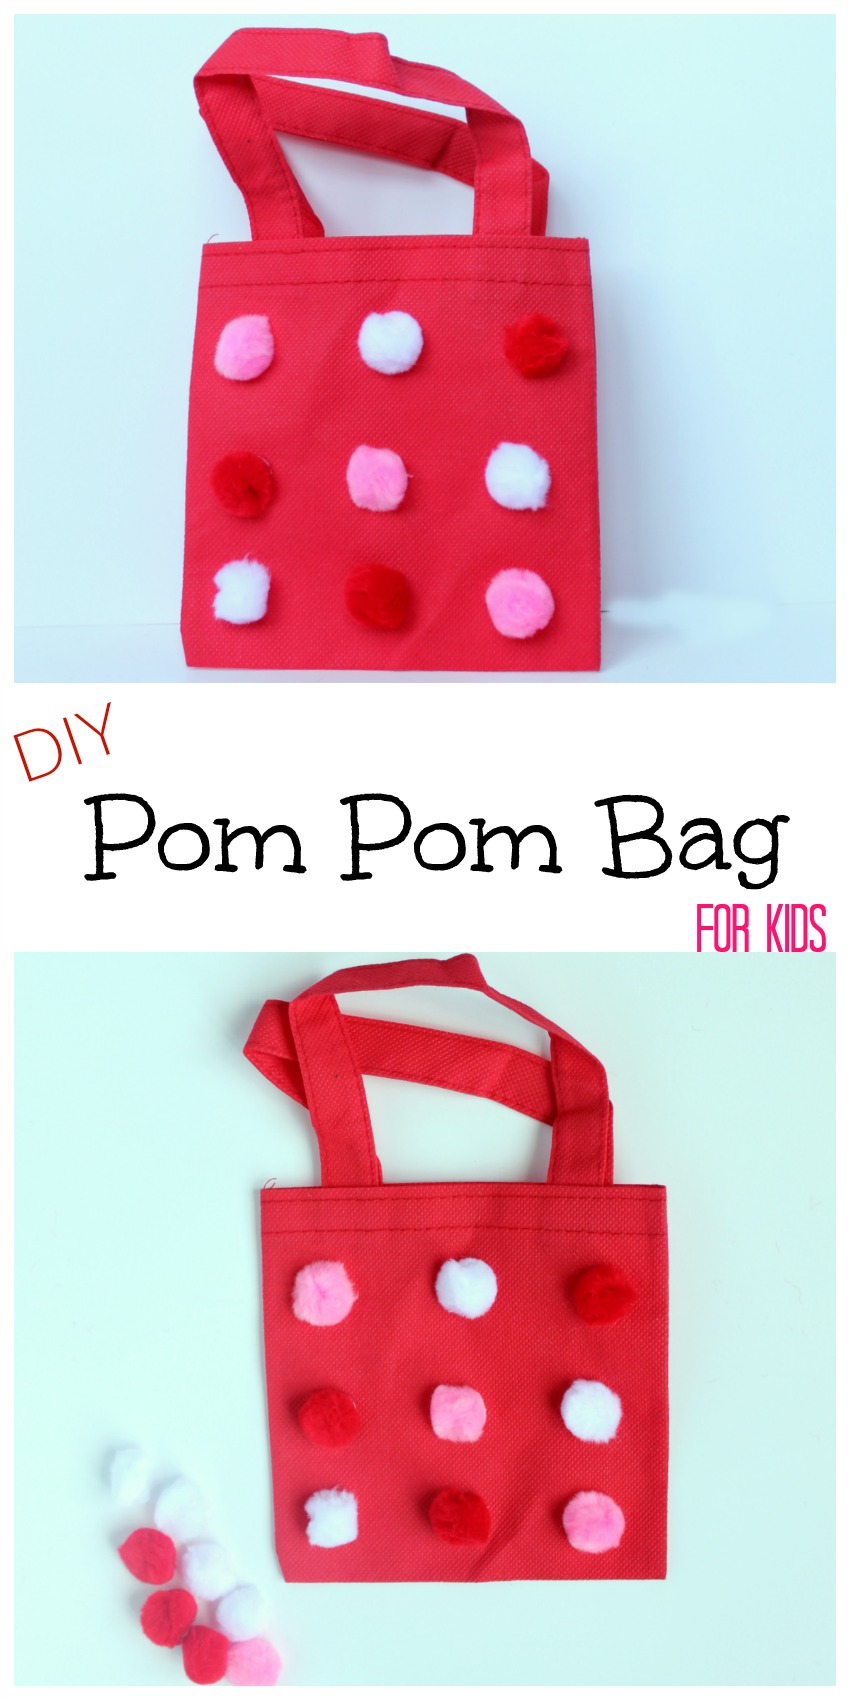 DIY Pom Pom Bag for Kids 